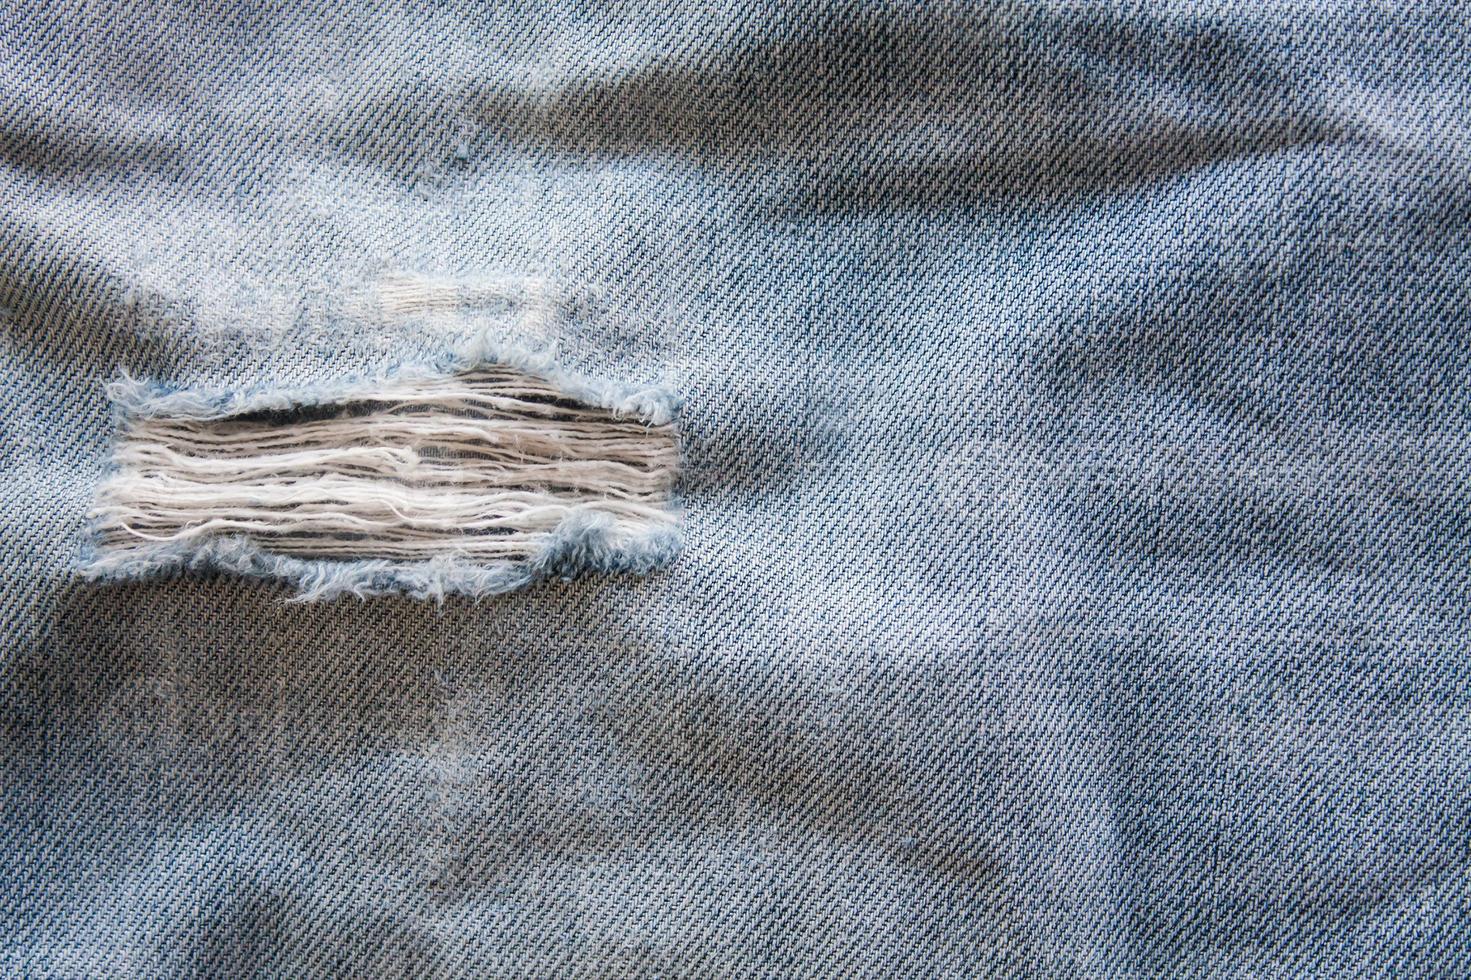 jeans sliten denim textur foto